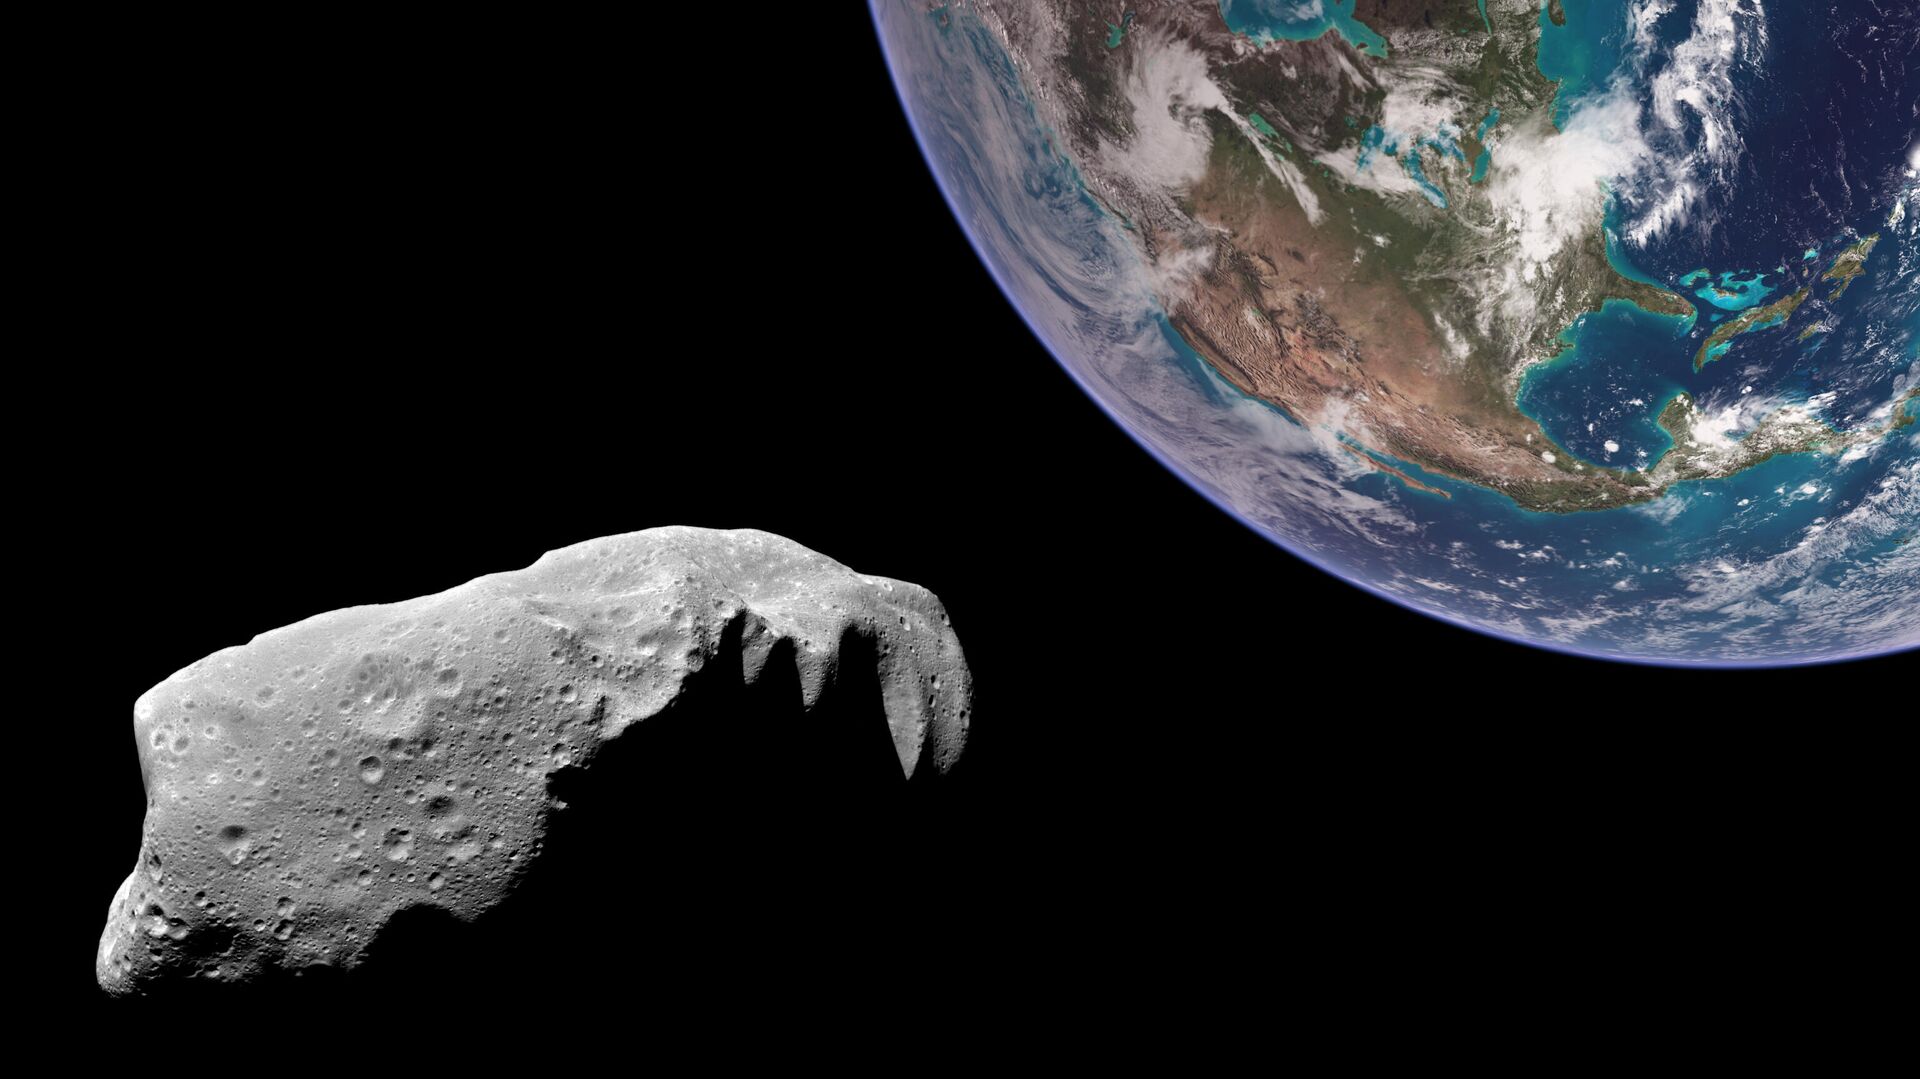 Во ВНИИ ГОЧС рассказали об астероиде, который опасно сблизится с Землей